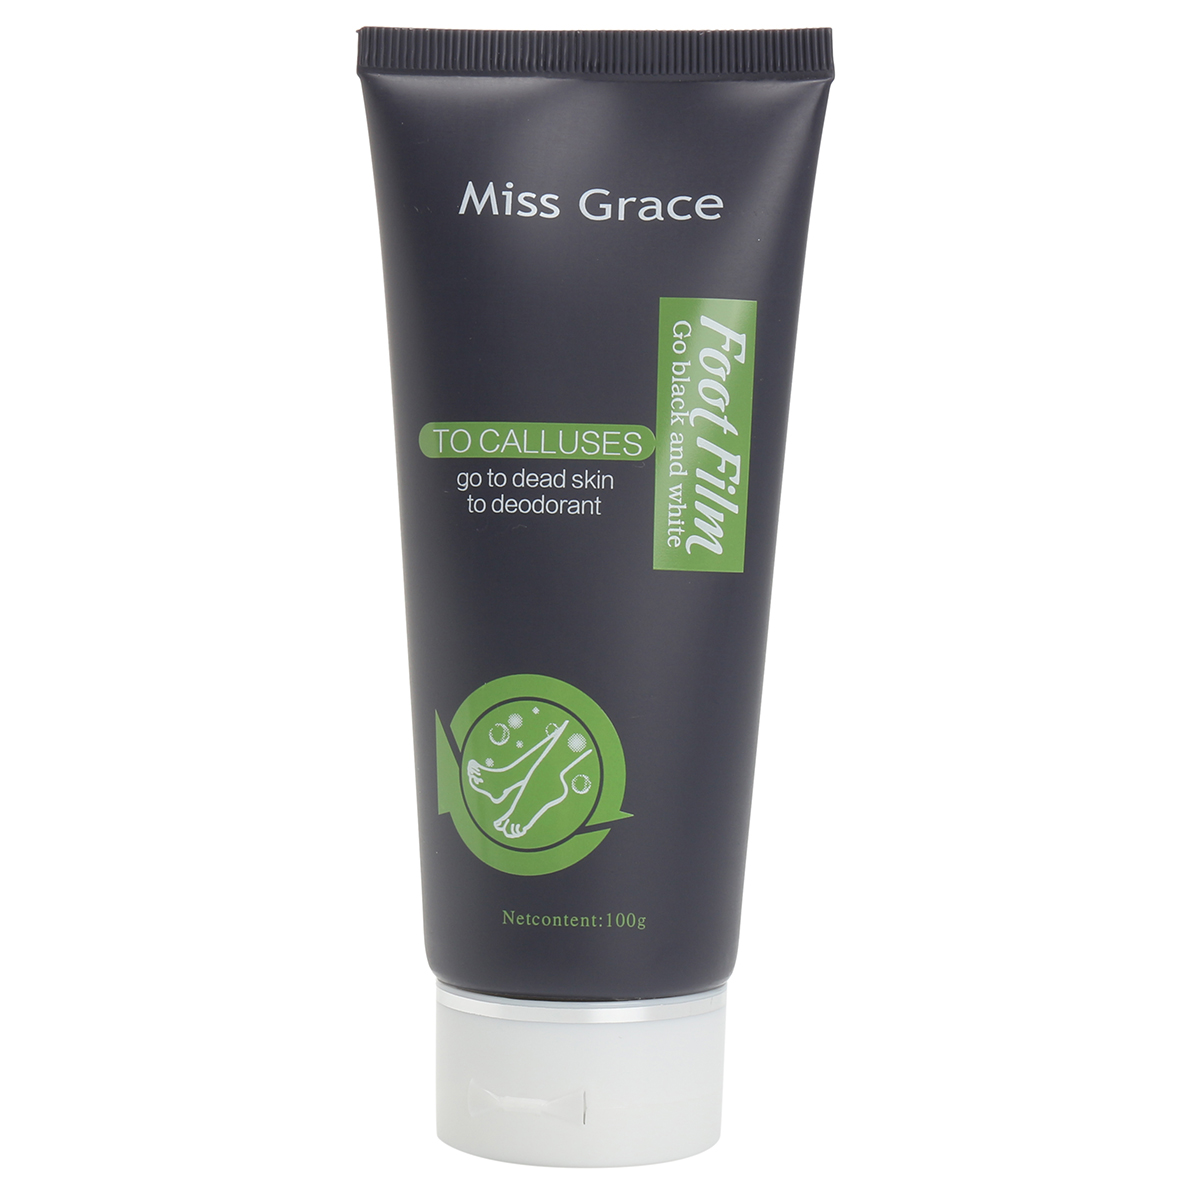 Miss Grace Foot Cream Exfoliating Repair Foot Care 100g